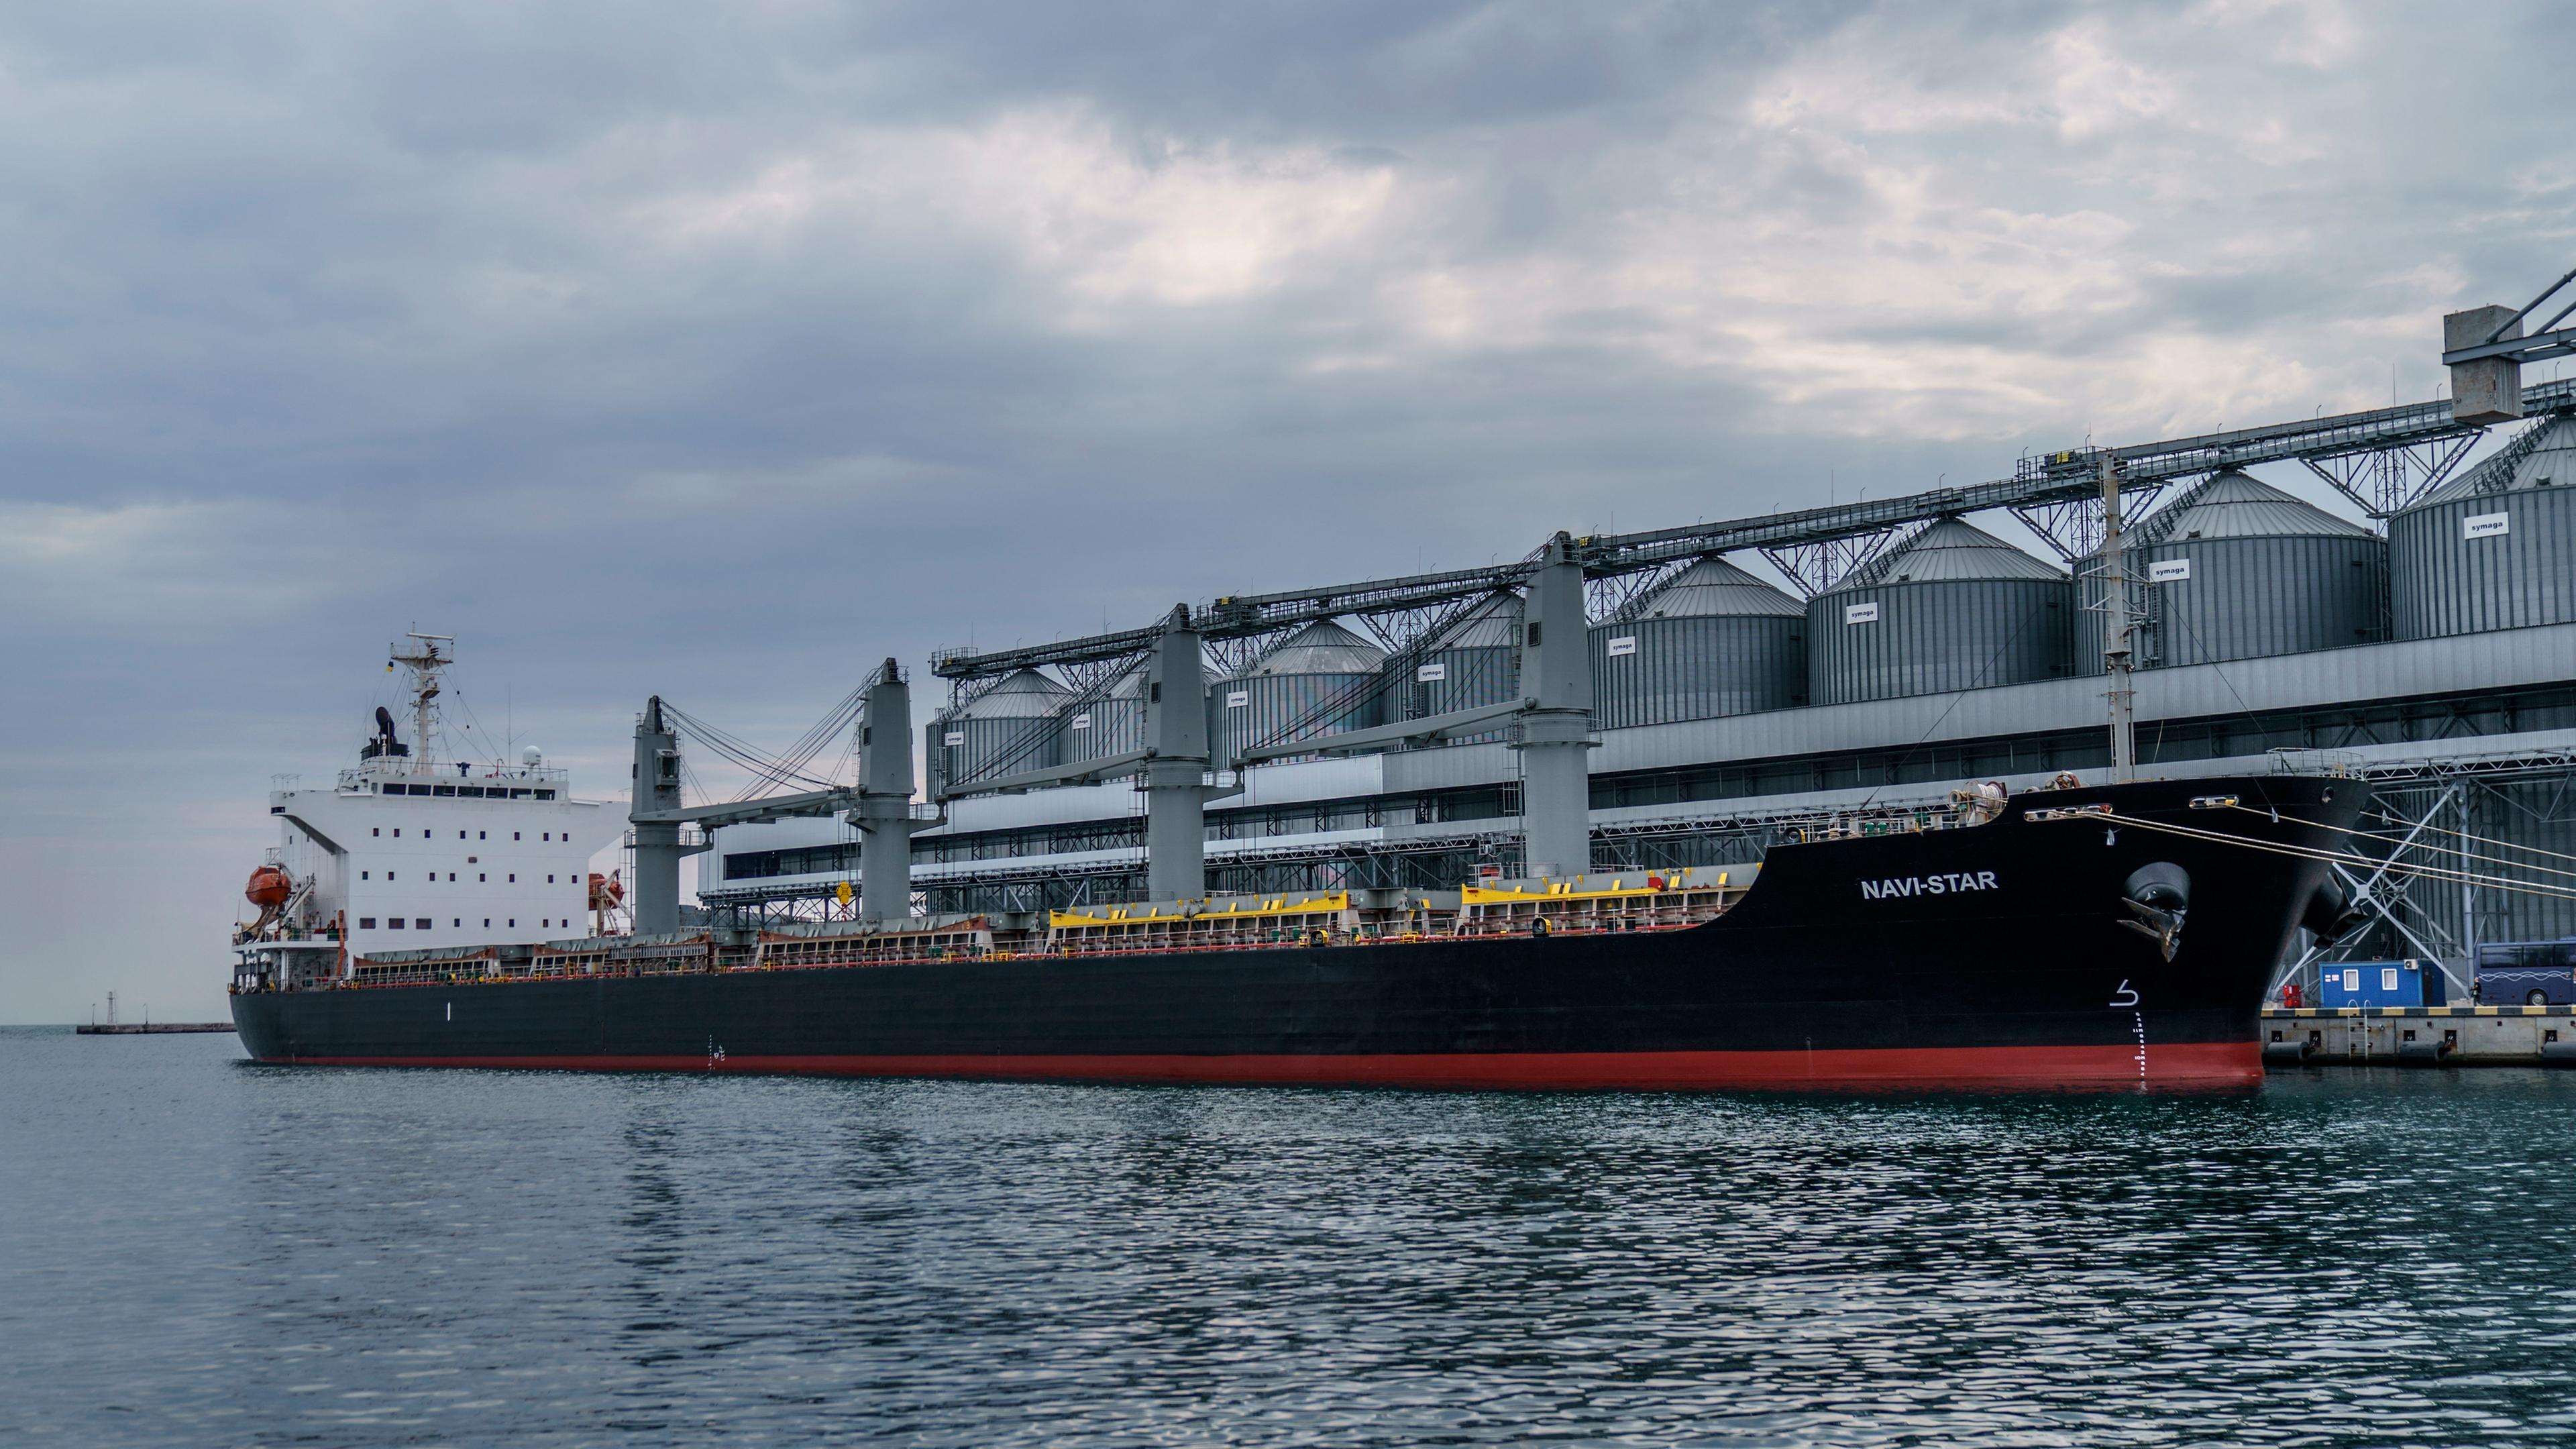 Das Frachtschiff Navi-Star ist seit Beginn des Krieges mit Getreide beladen und wartet darauf, den Hafen von Odessa zu verlassen, aufgenommen am 29.07.2022